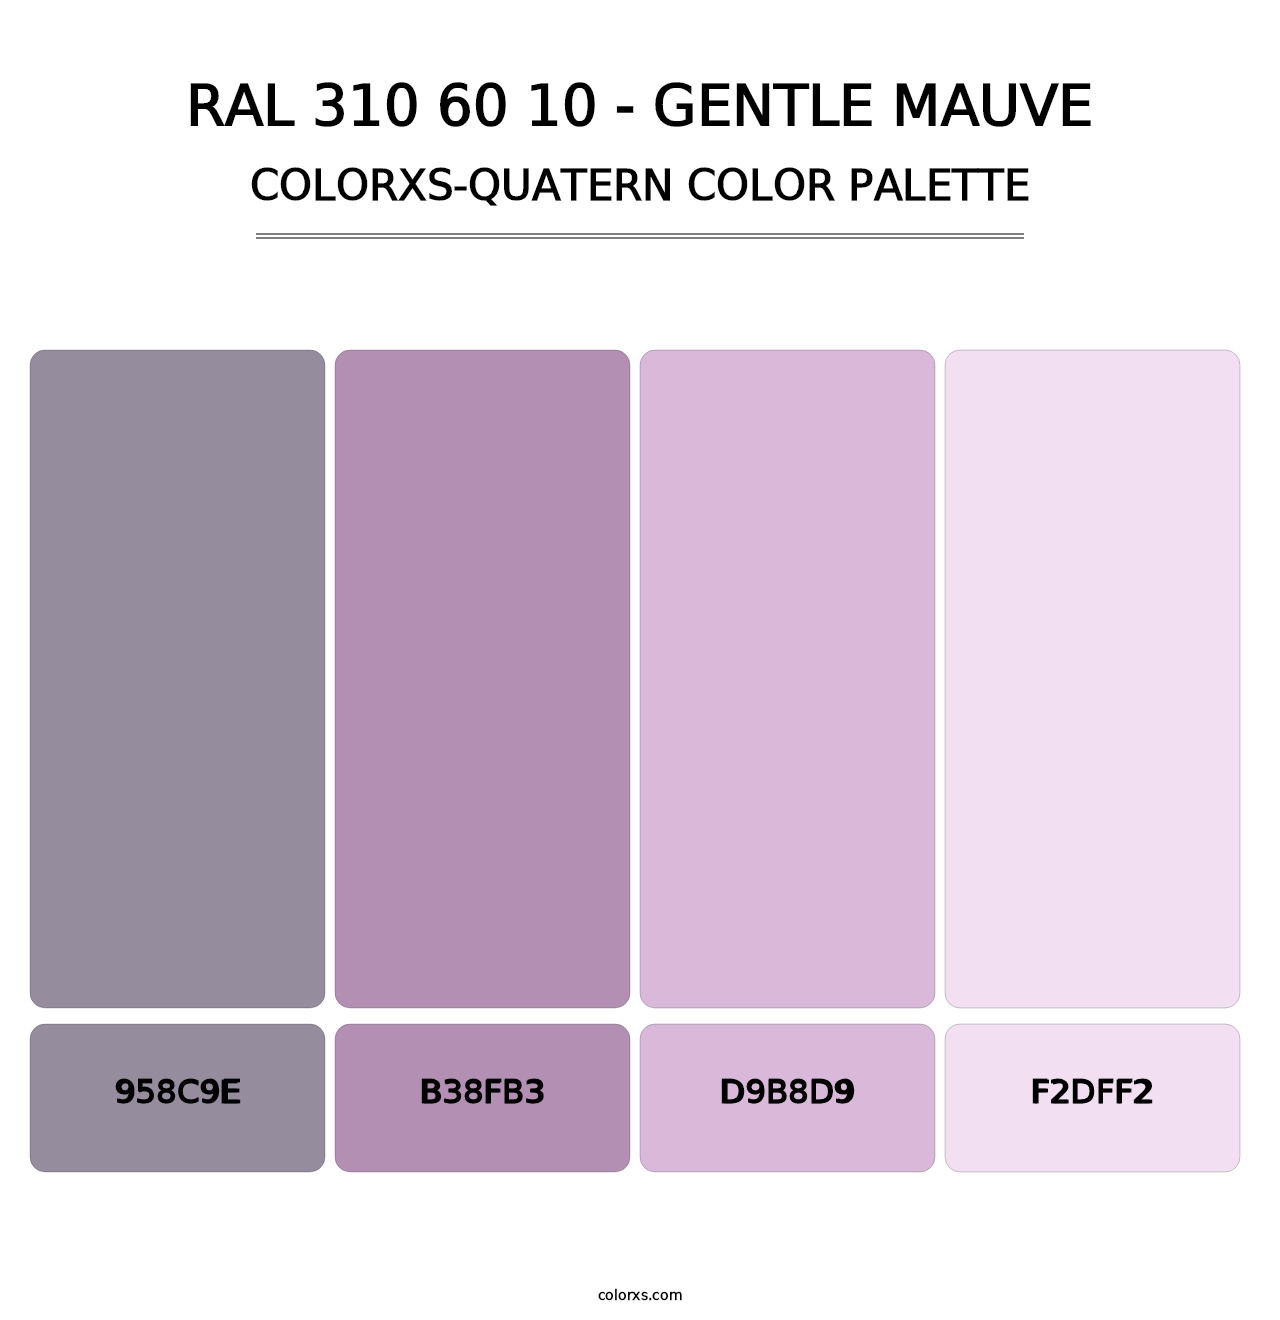 RAL 310 60 10 - Gentle Mauve - Colorxs Quatern Palette